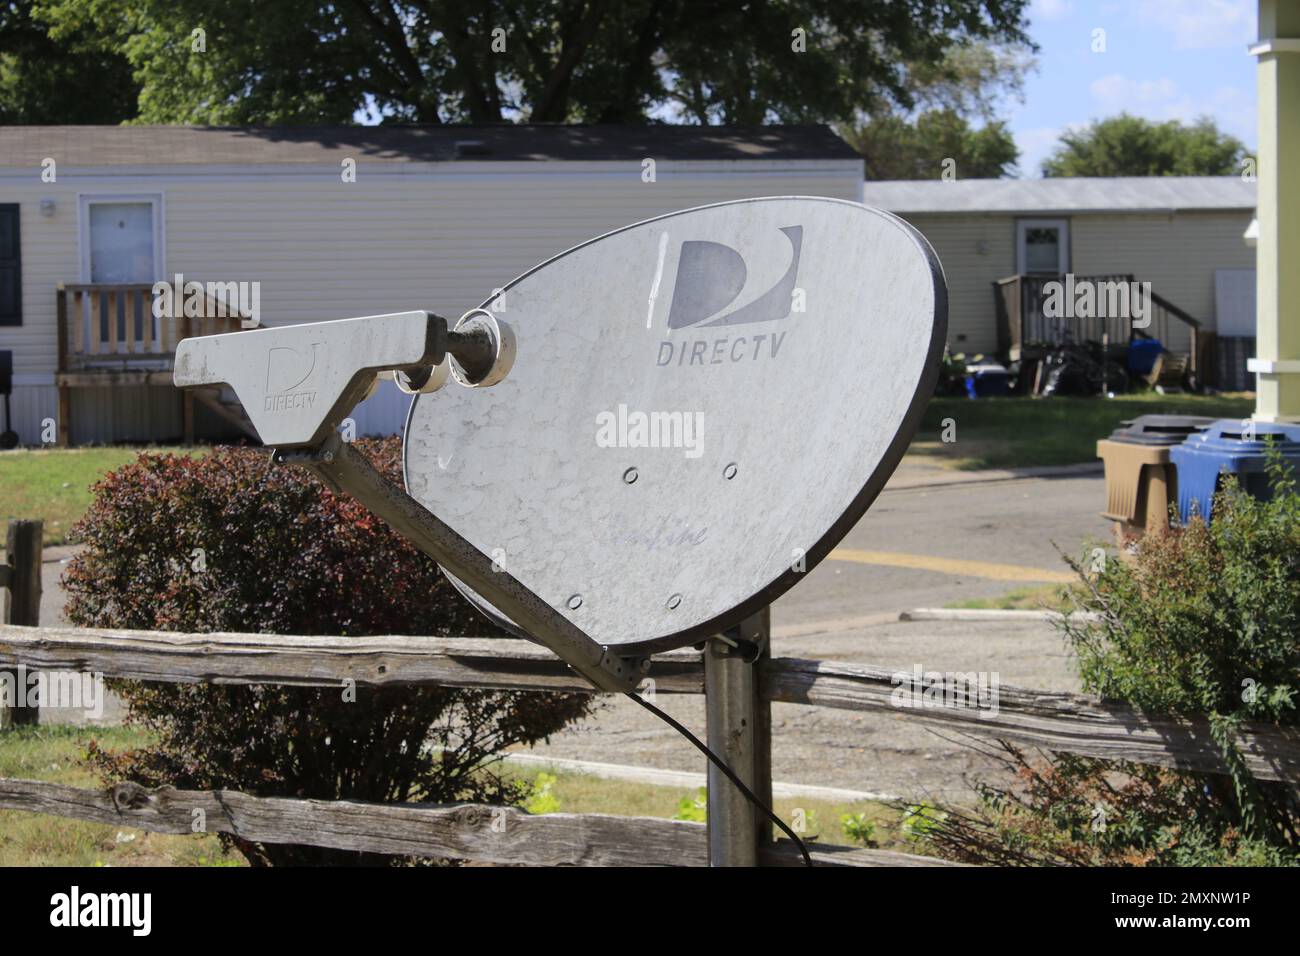 Direct TV Satellit in einem Hoffoto Nahaufnahme mit Bäumen im Hintergrund Stockfoto